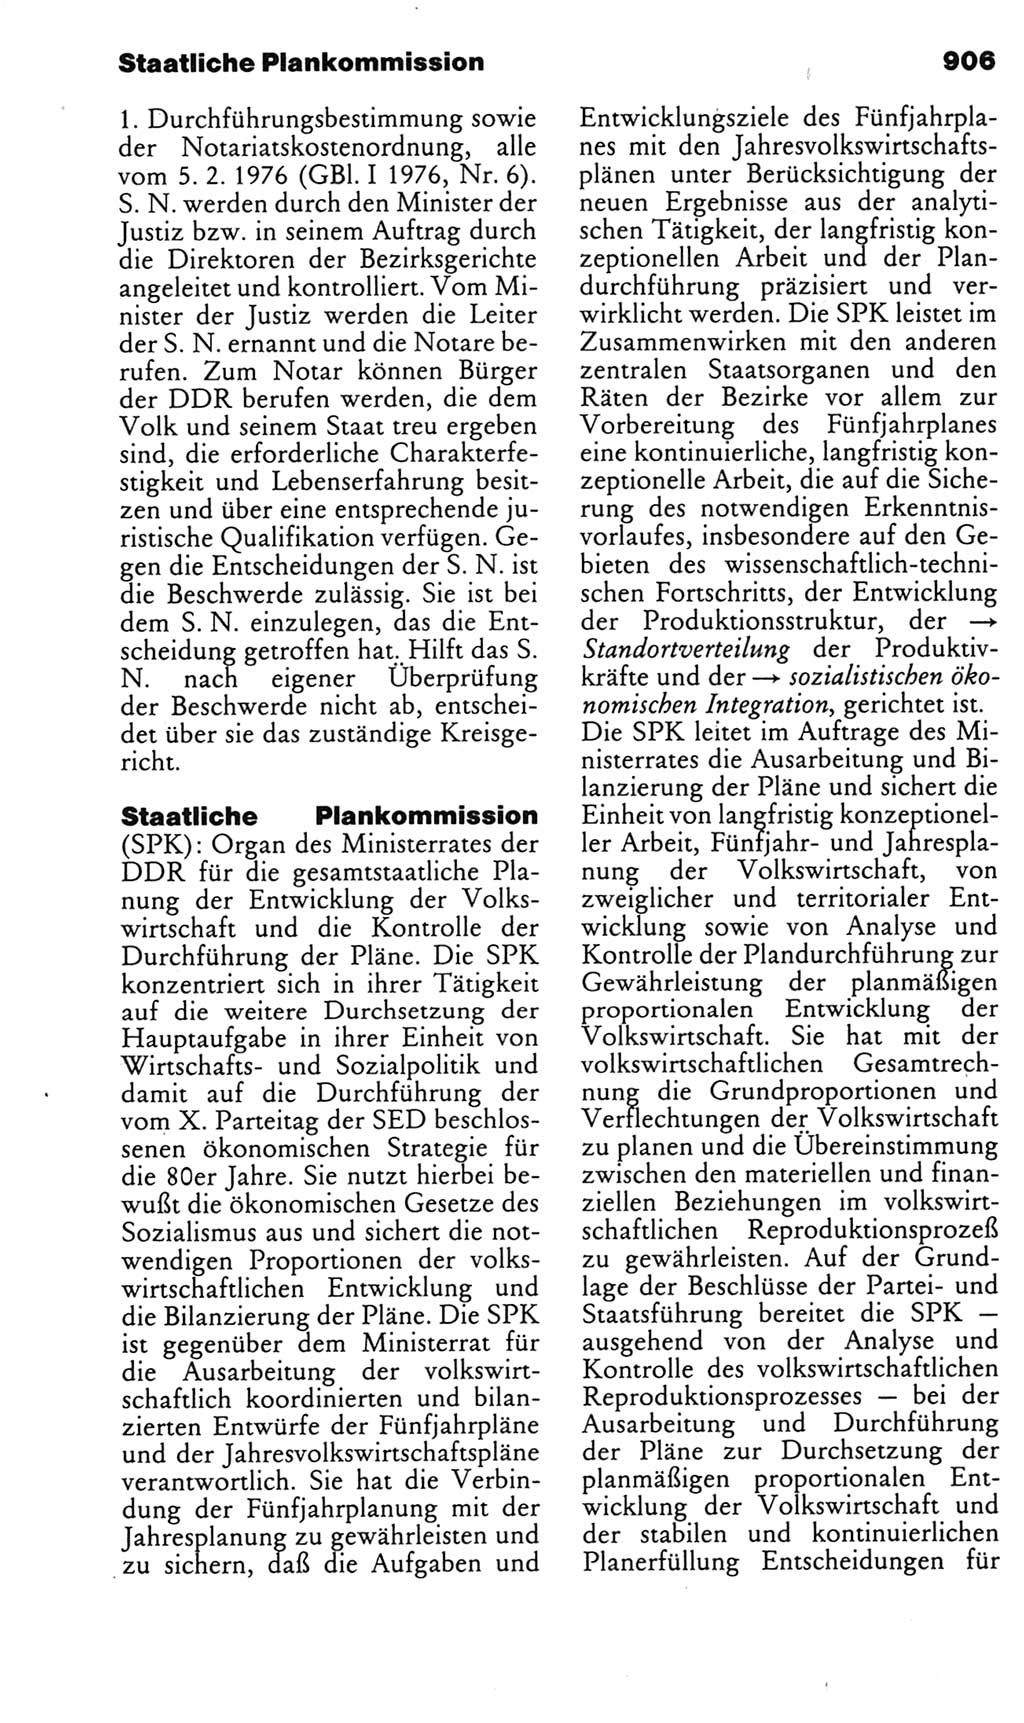 Kleines politisches Wörterbuch [Deutsche Demokratische Republik (DDR)] 1985, Seite 906 (Kl. pol. Wb. DDR 1985, S. 906)